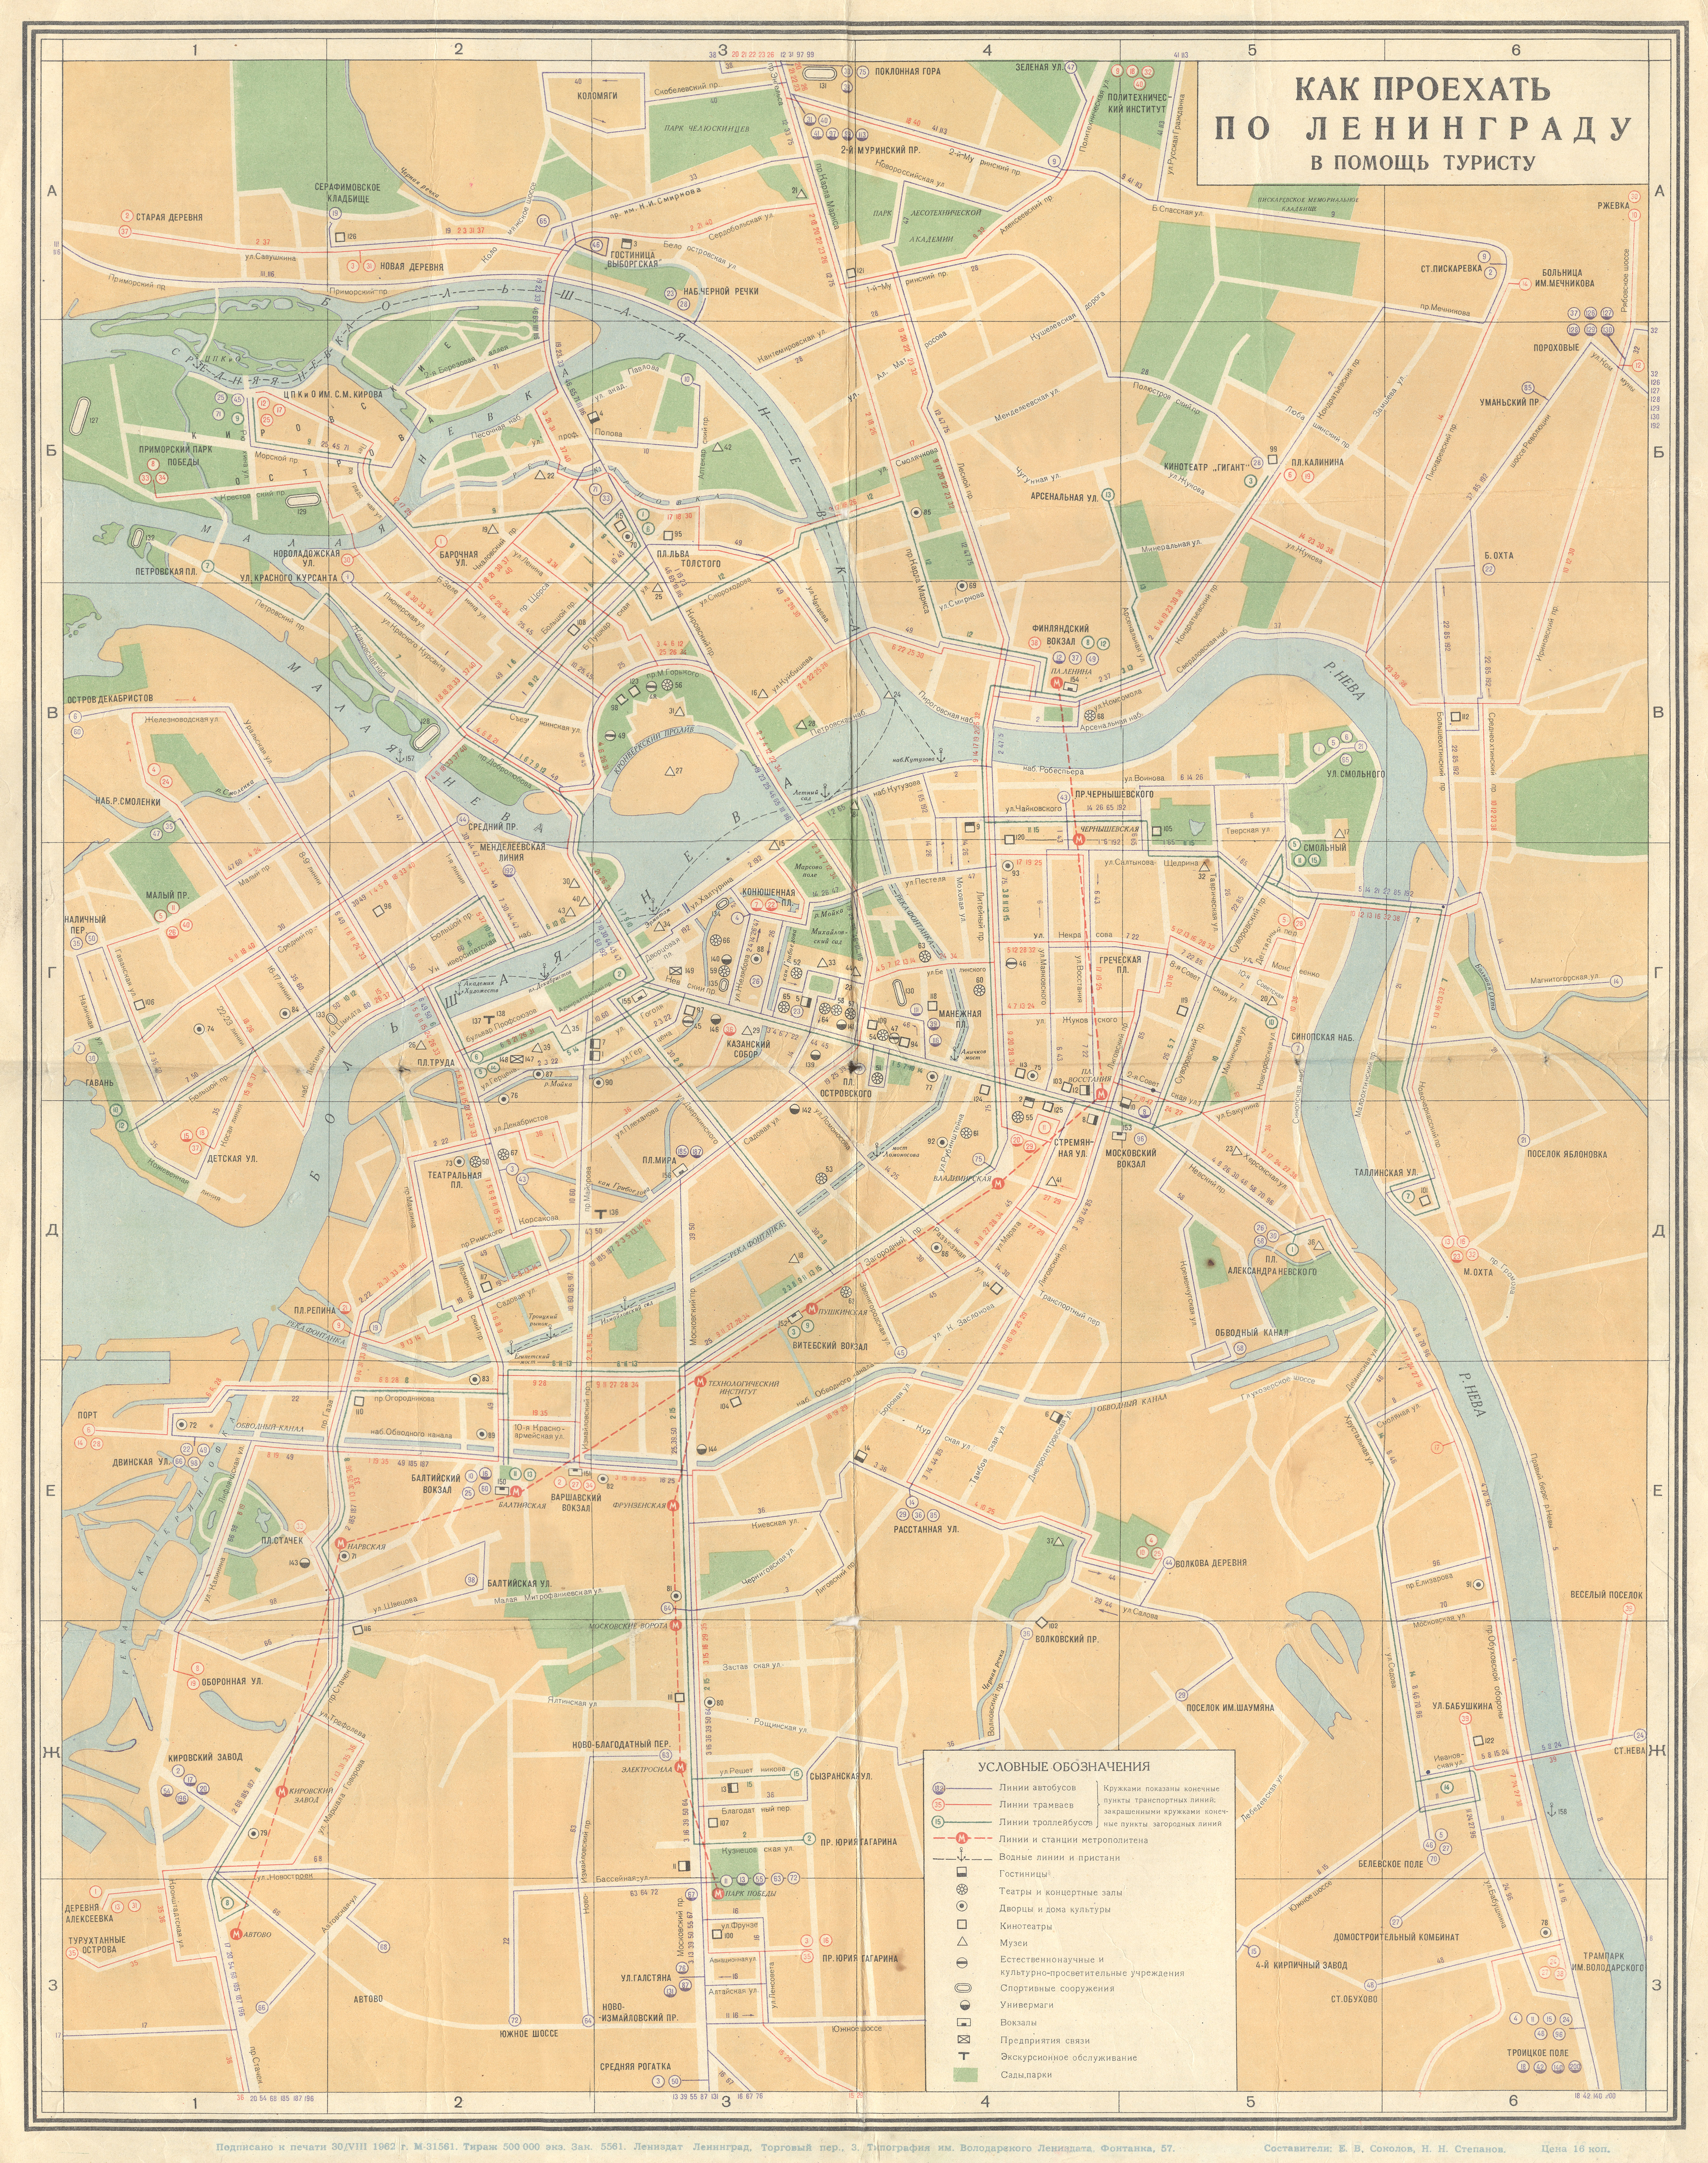 聖彼德斯堡 — Systemwide Maps